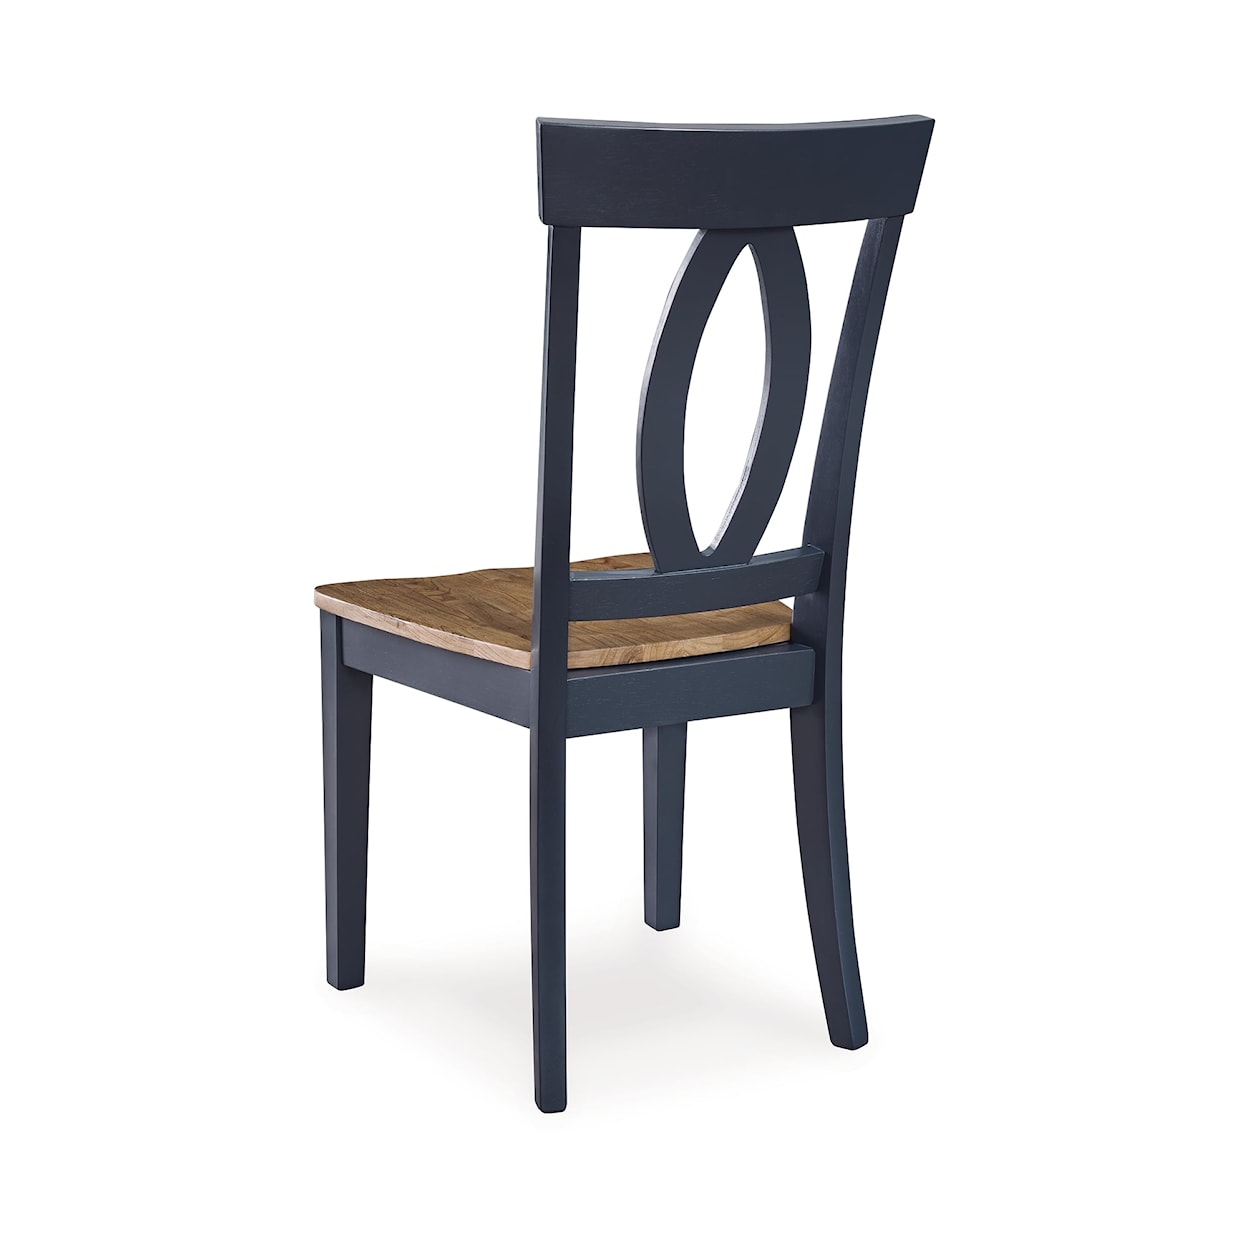 Benchcraft Landocken Dining Room Side Chair